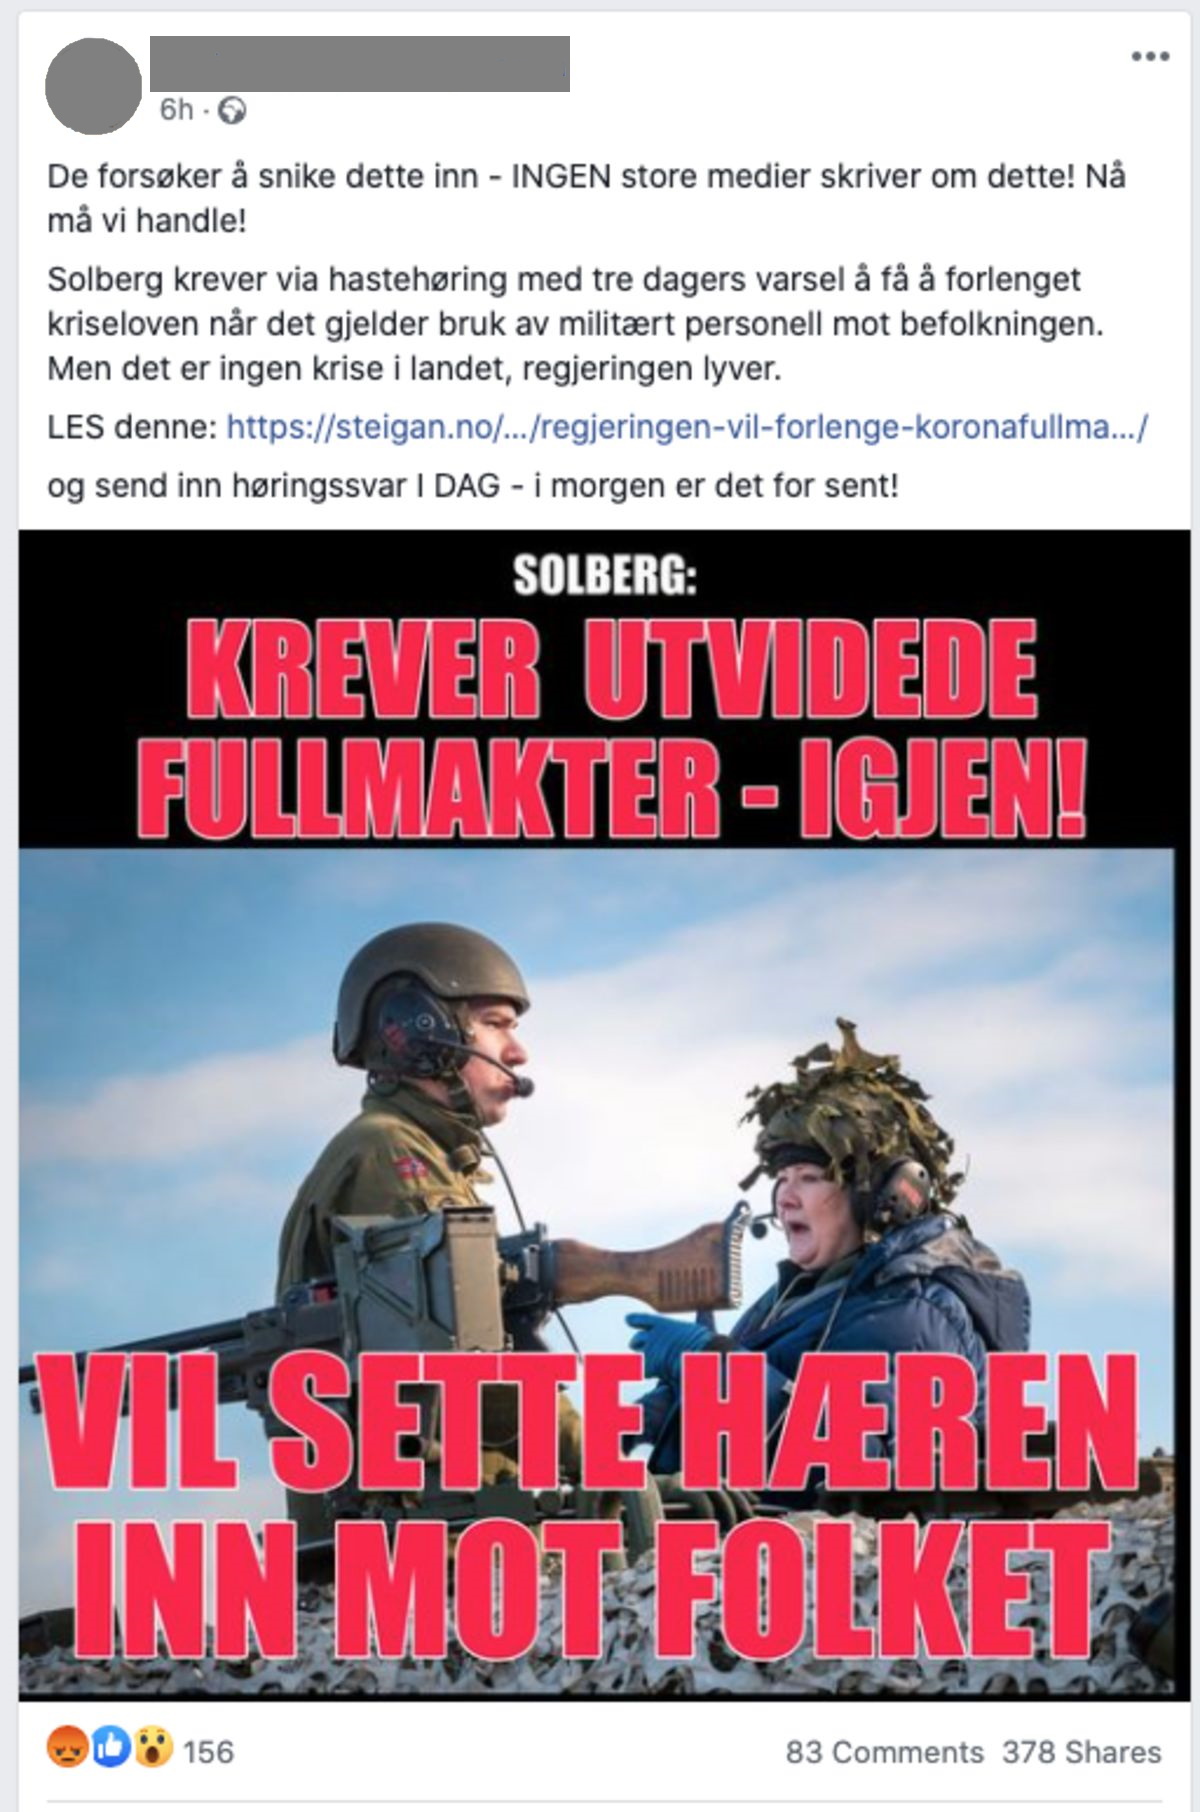 Falsk nyhet/desinformasjon som hevder at statsminister Erna Solberg vil sette Hæren inn mot befolkningen